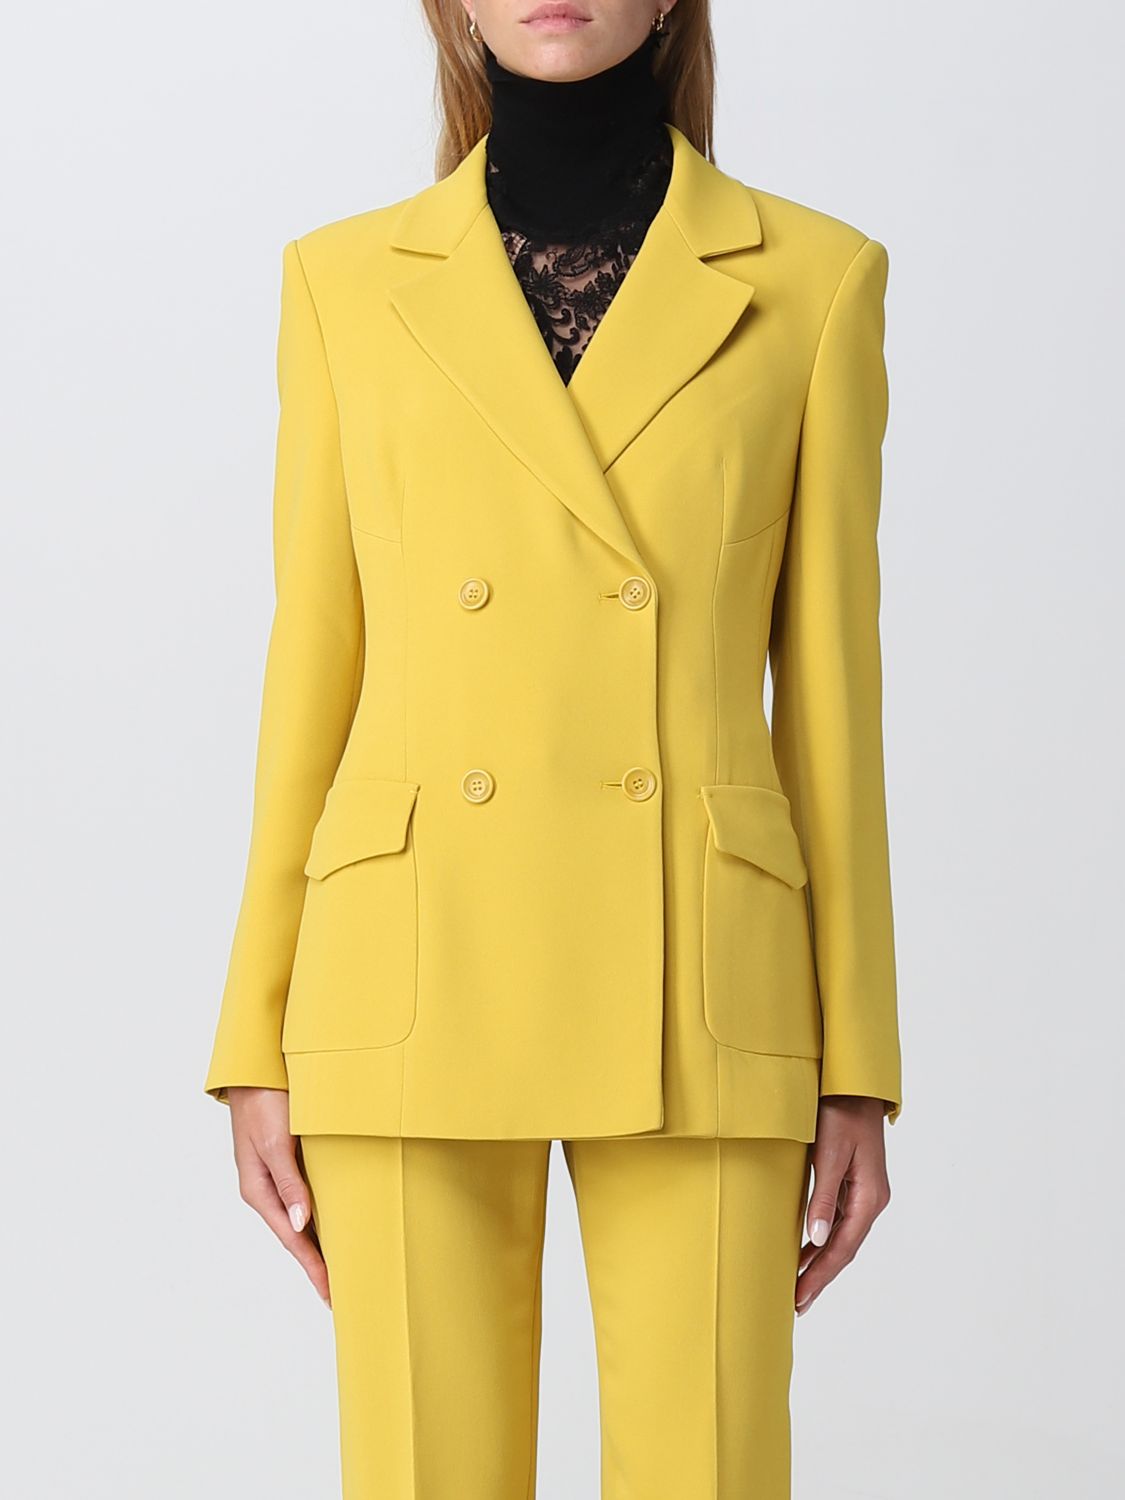 ERMANNO SCERVINO: blazer for woman - Yellow | Ermanno Scervino blazer ...